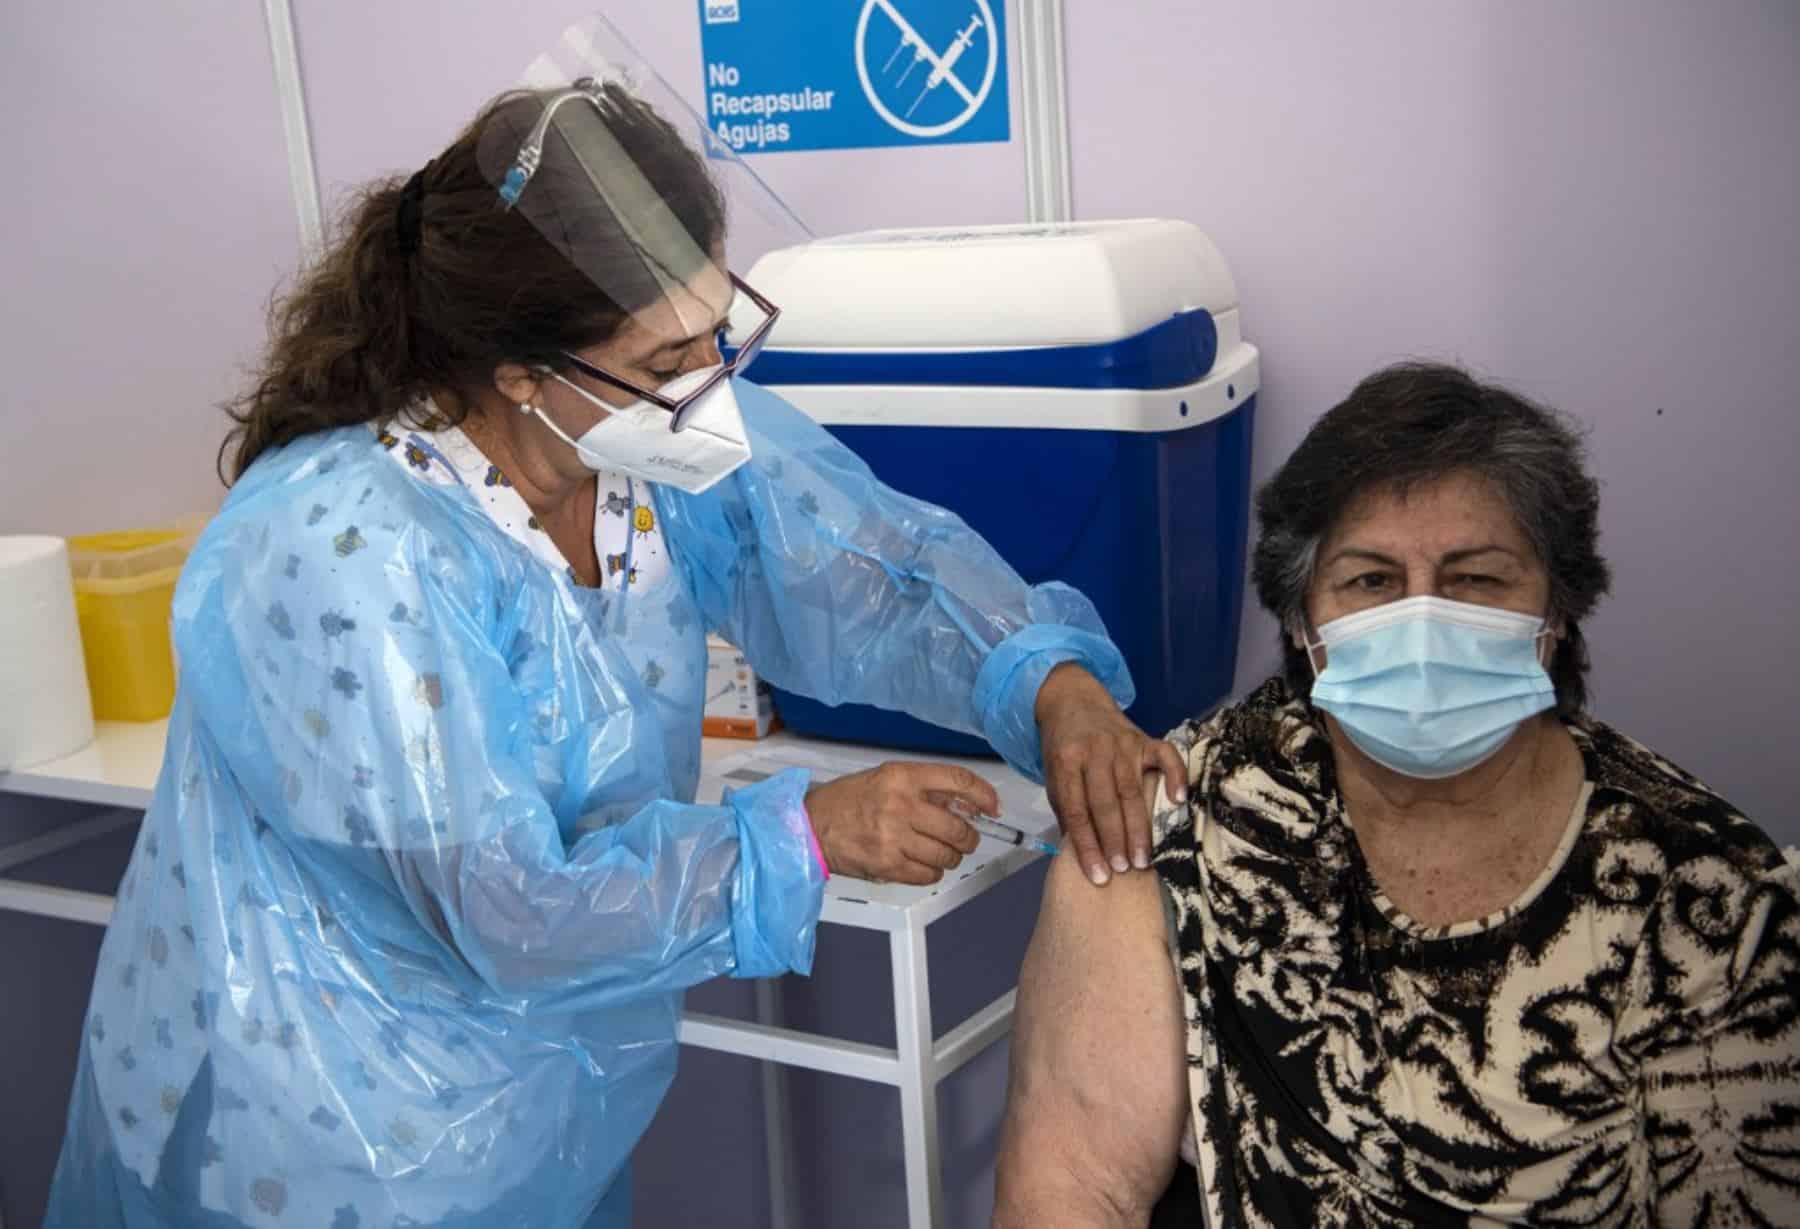 Chile arriesgó y prepagó vacunas que no sabía si funcionarían